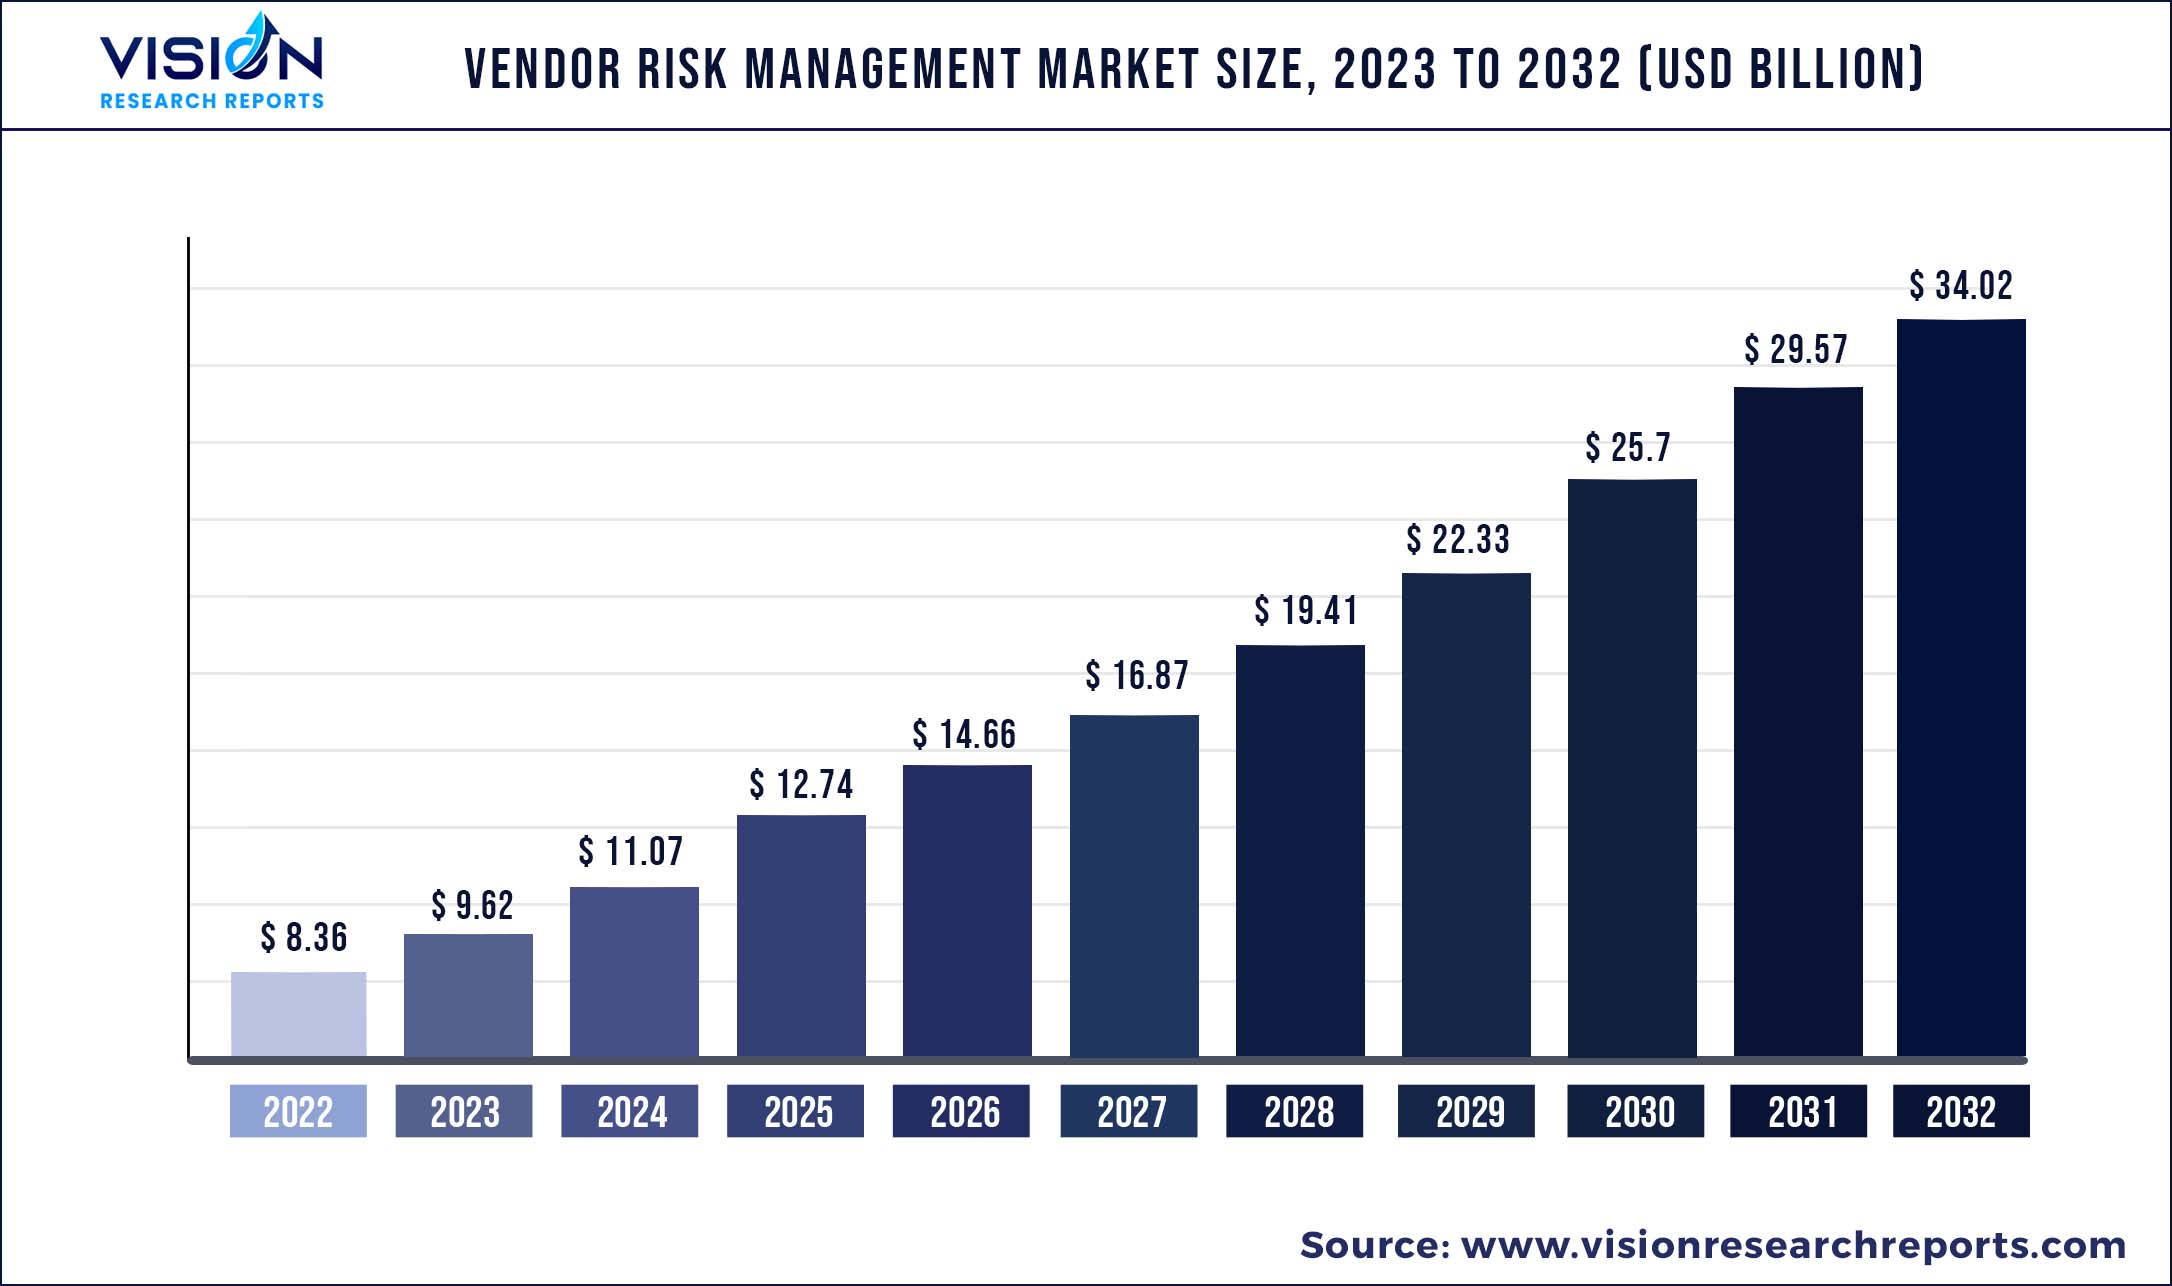 Vendor Risk Management Market Size 2023 to 2032